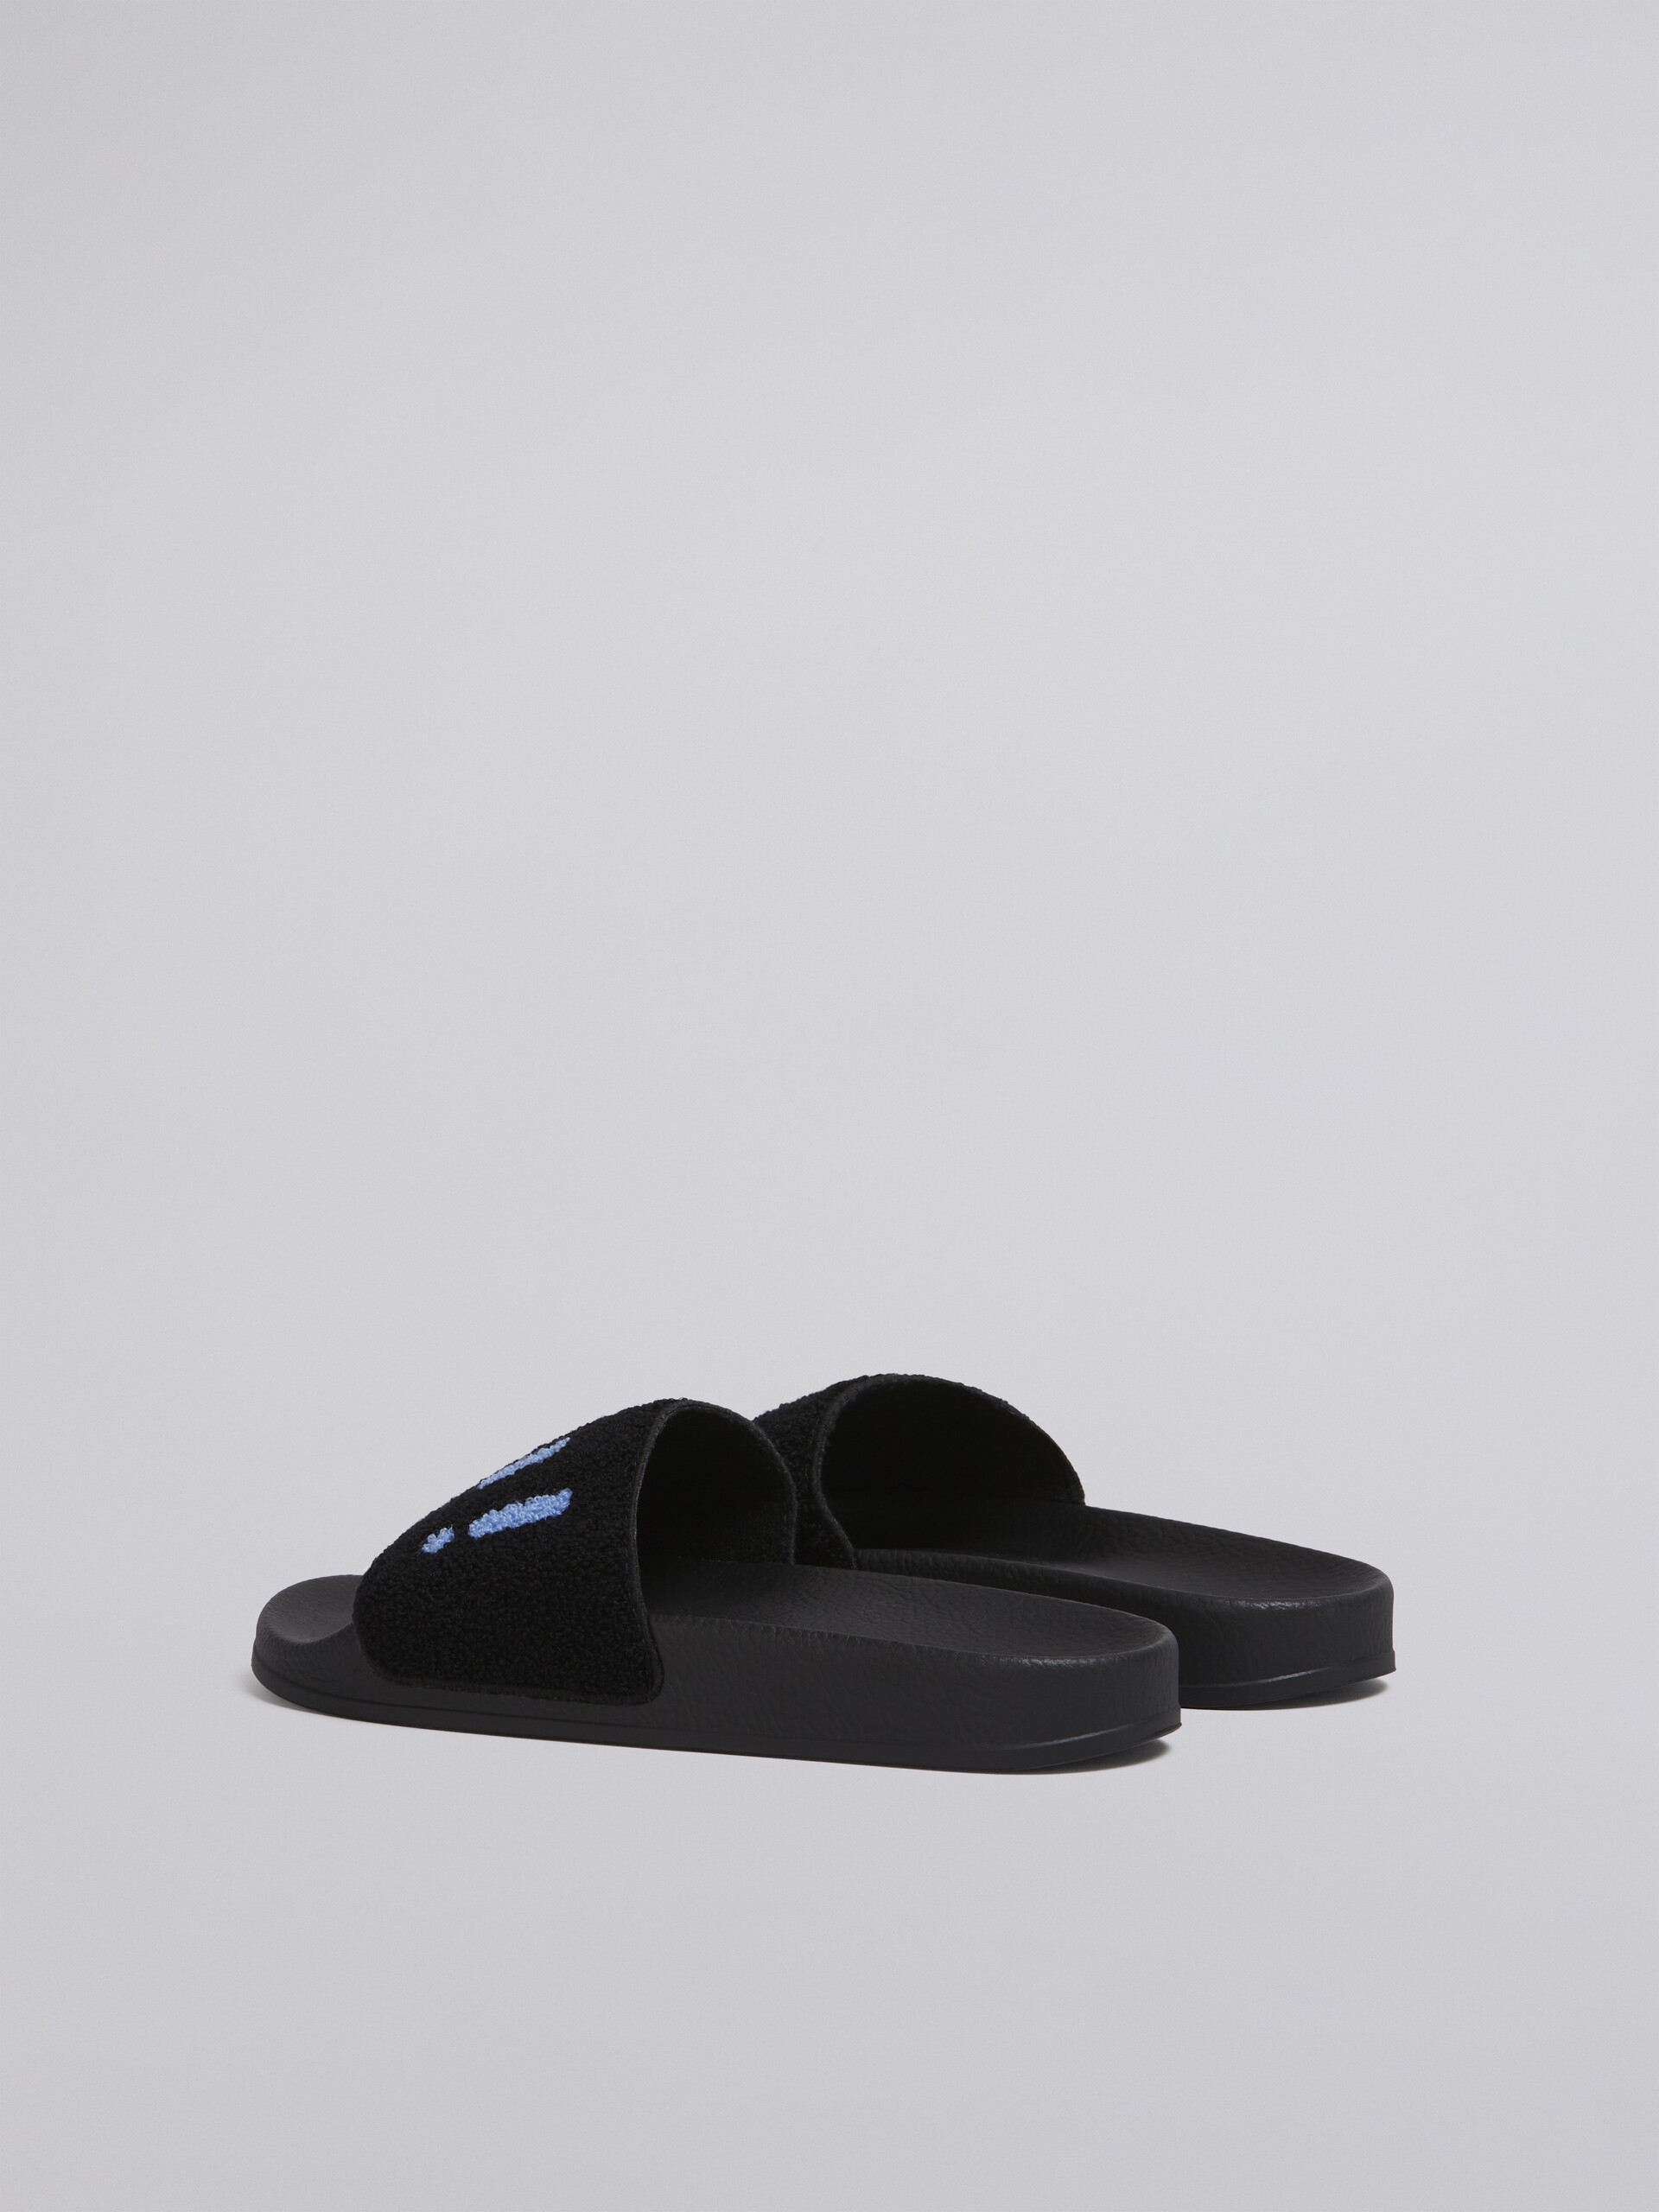 Sandalo in gomma con fascia in spugna nero e blu - Sandali - Image 3